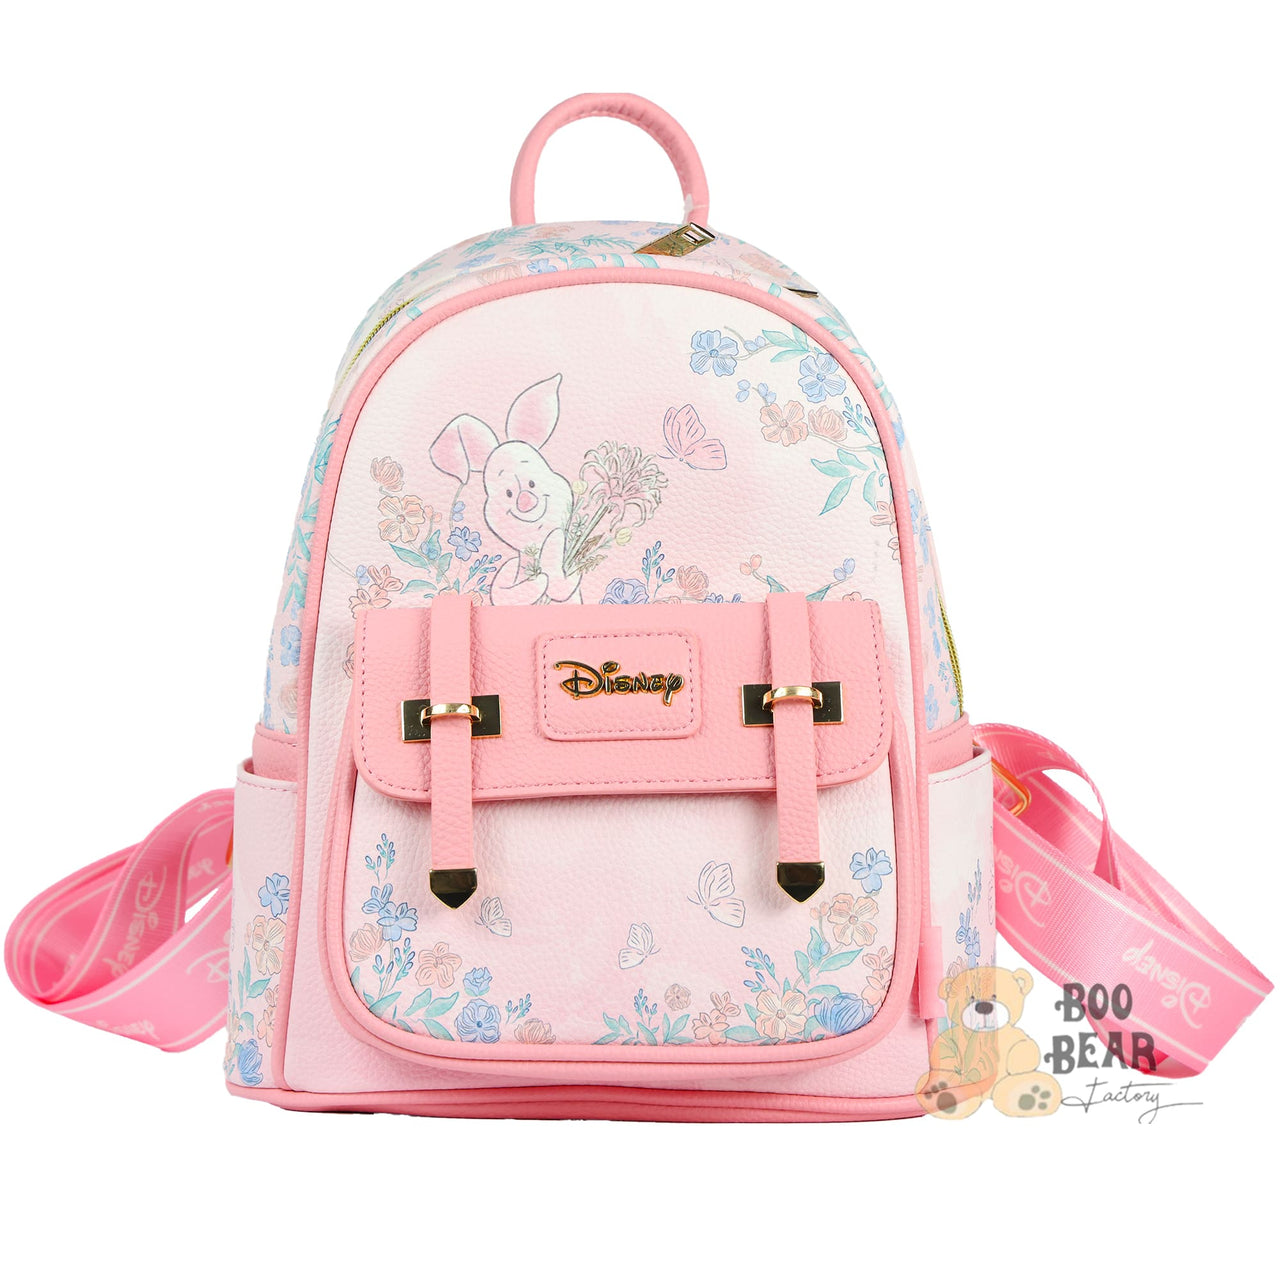 Disney Piglet Backpack